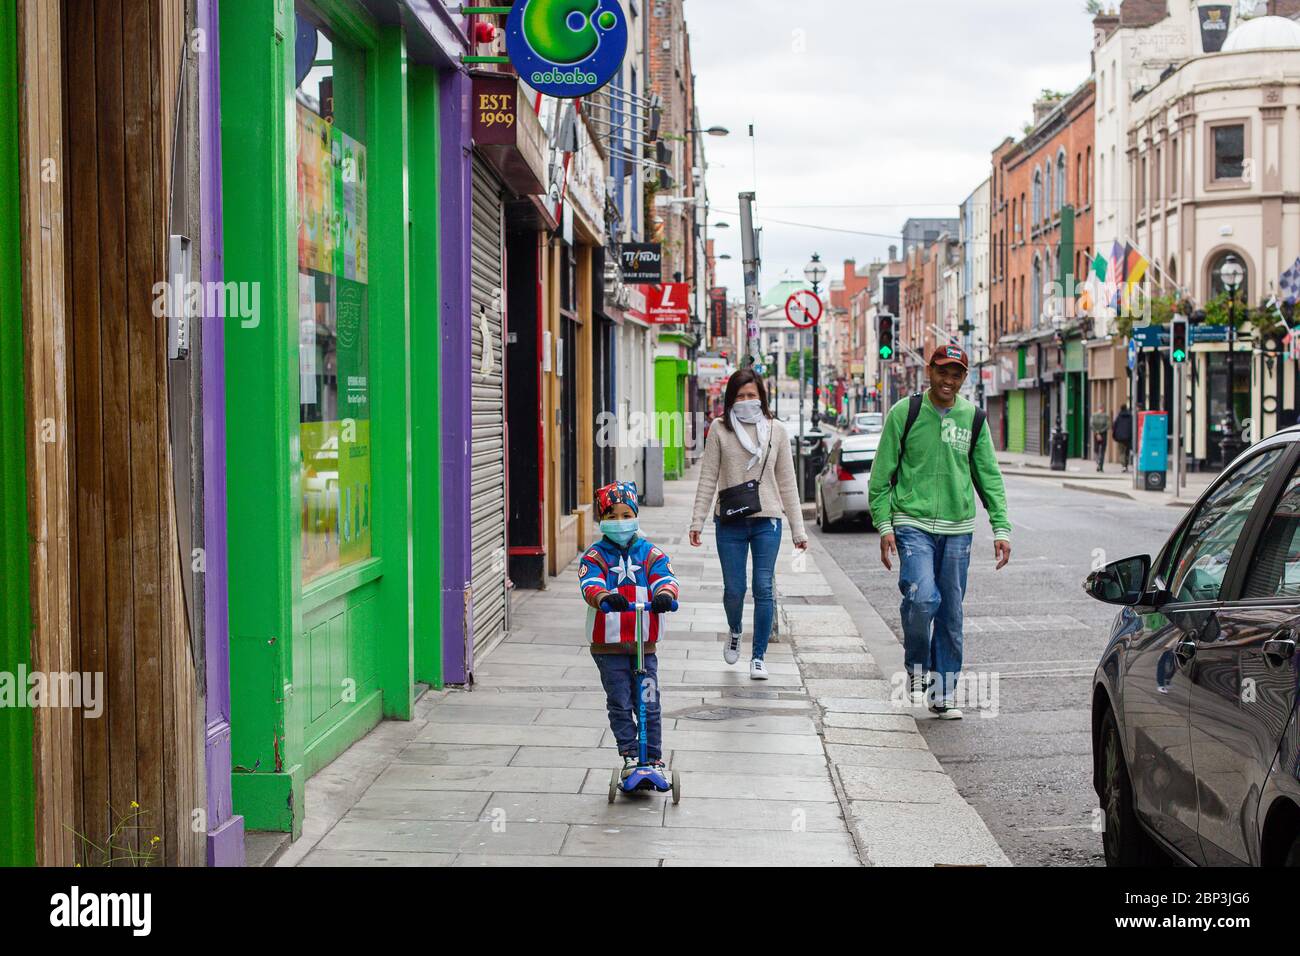 Junge auf einem Roller mit einer Superheldenjacke und einer schützenden Gesichtsmaske, die während der COVID-19-Pandemie mit seinen Eltern im Stadtzentrum von Dublin Sightseeing ist Stockfoto